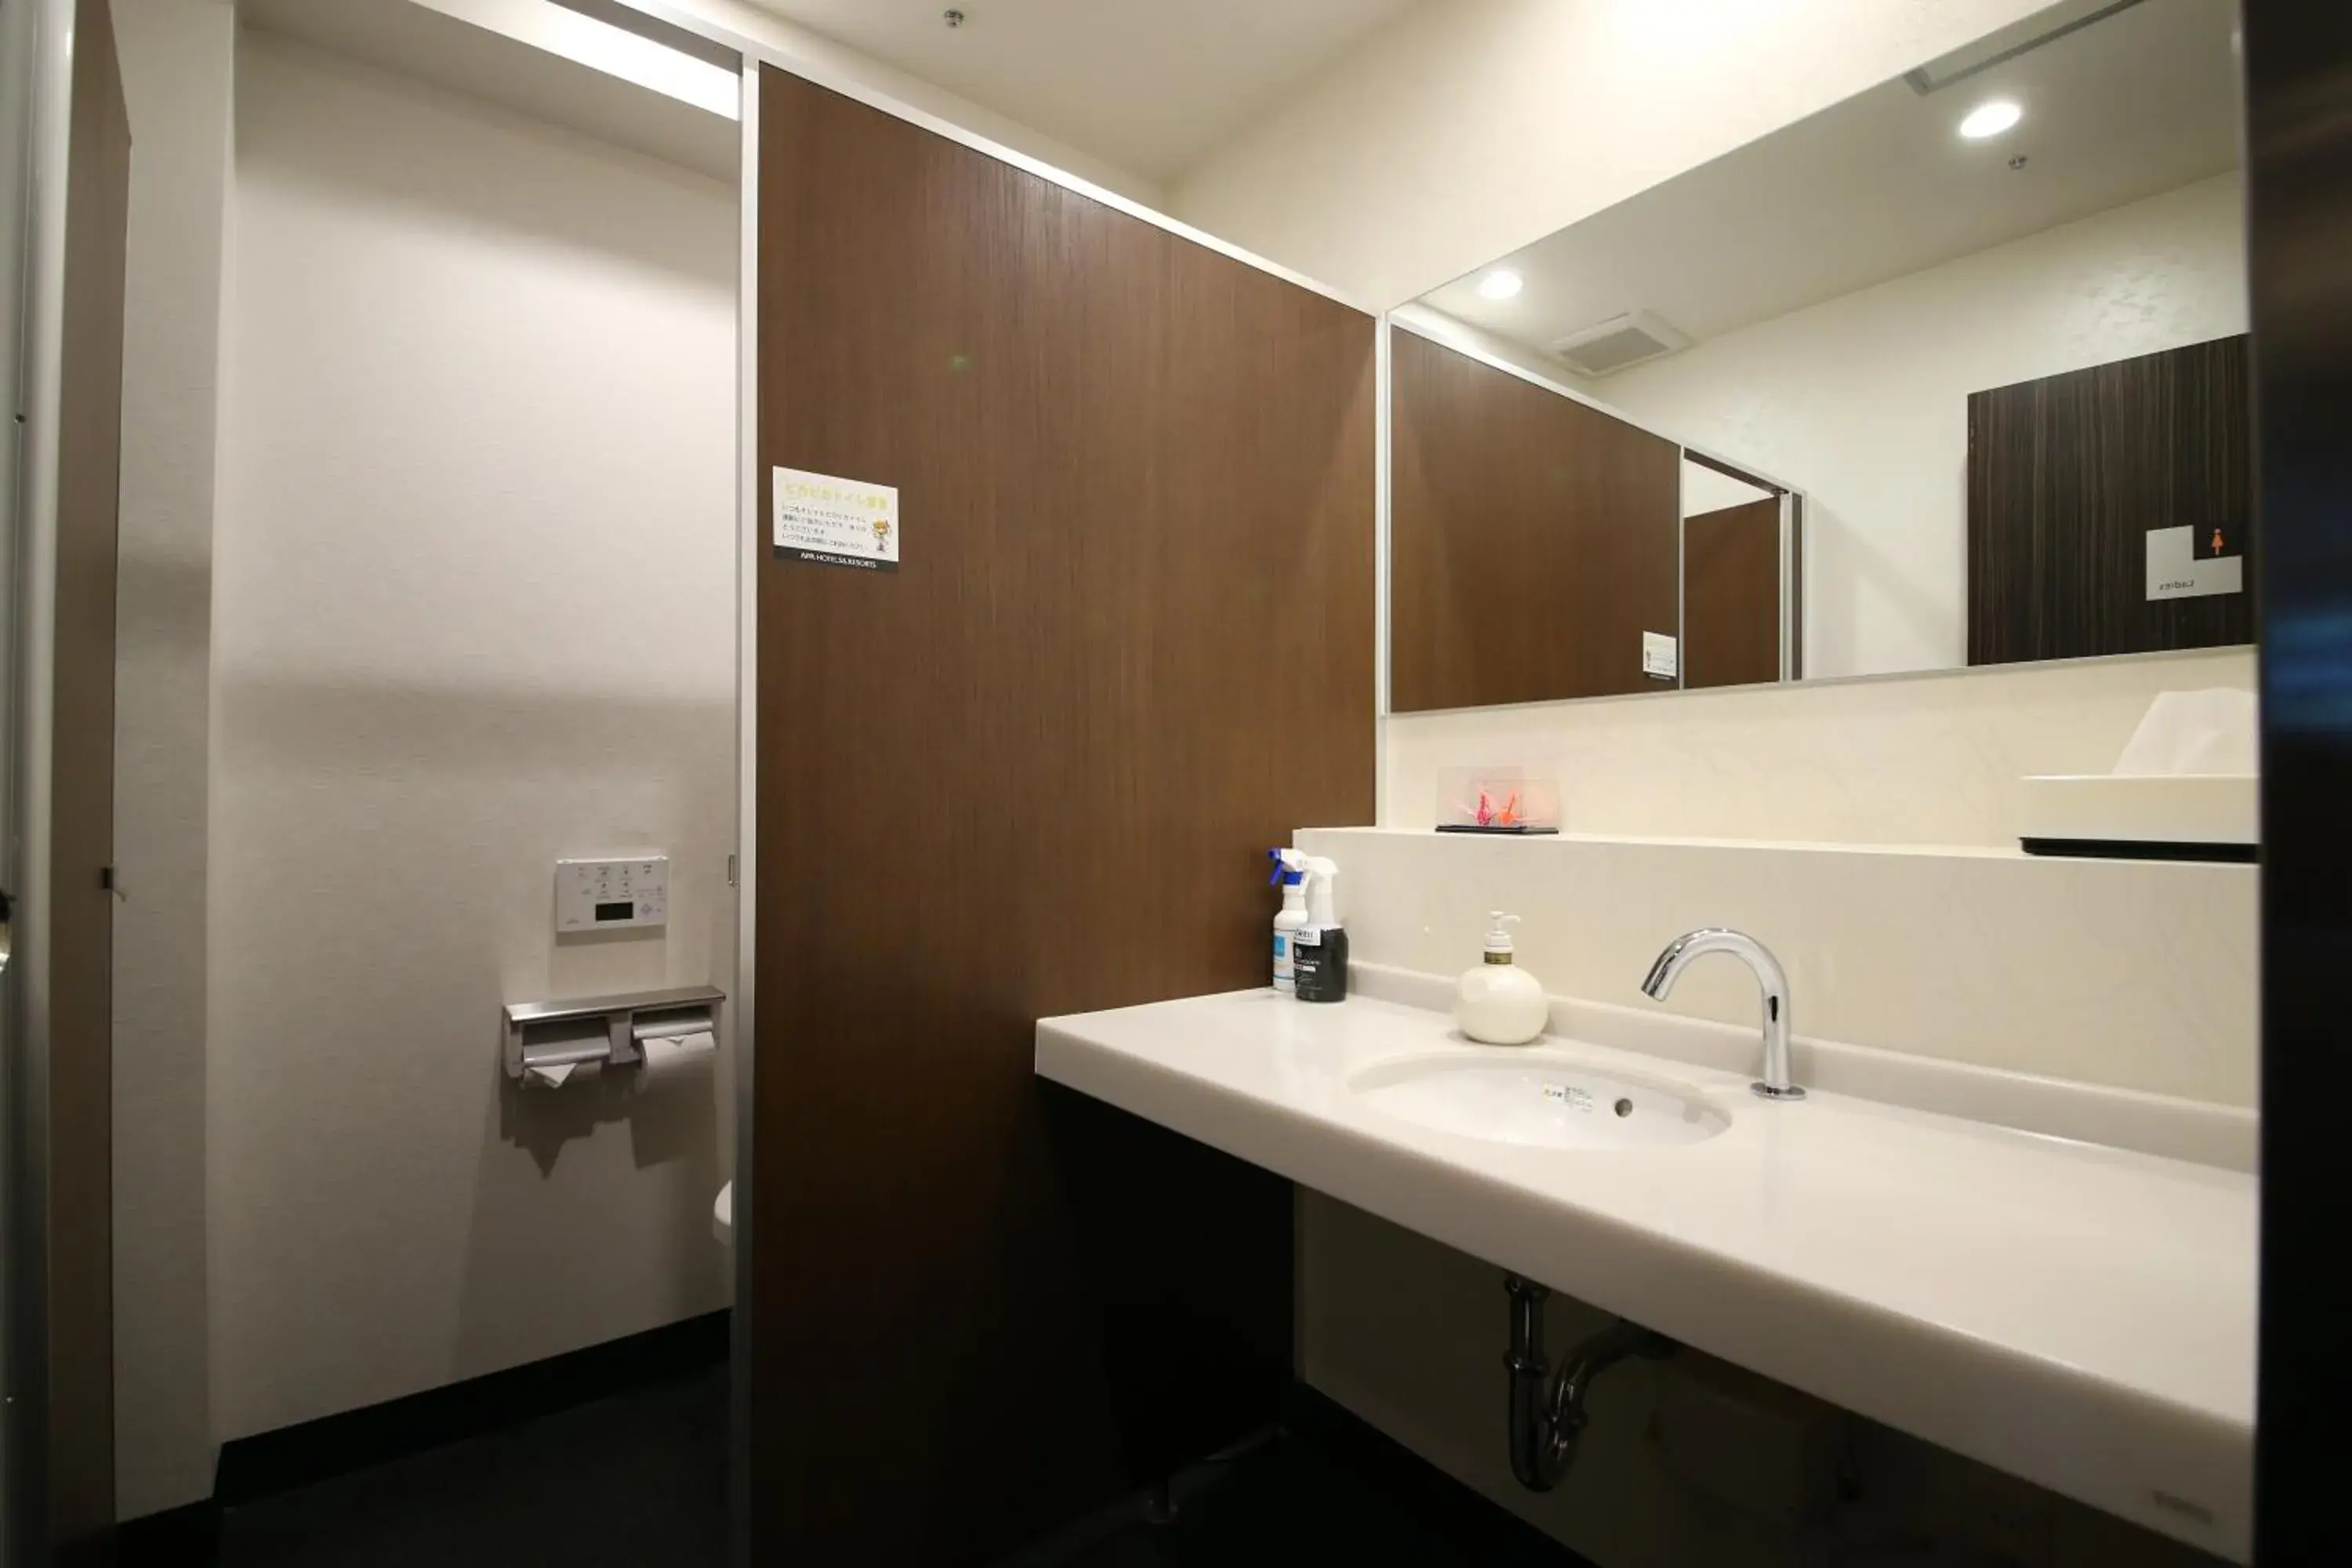 Area and facilities, Bathroom in APA Hotel Tokyo Kiba